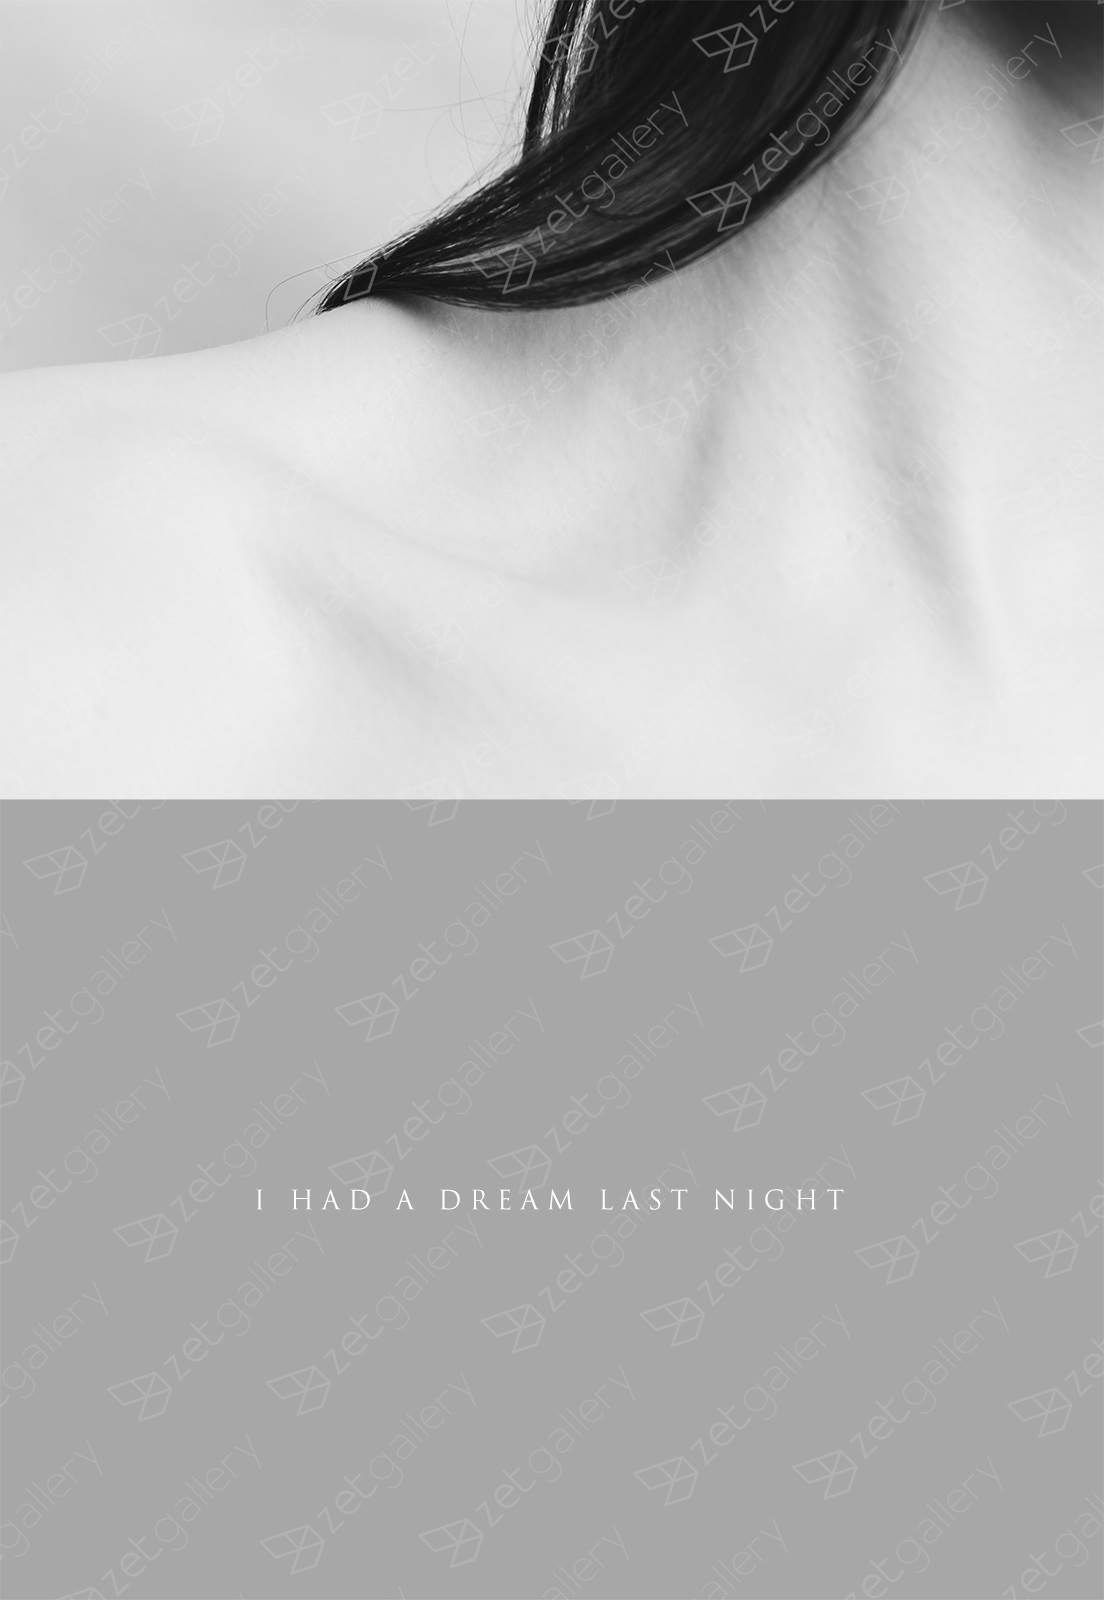 IHADLN (I HAD A DREAM LAST NIGHT), Fotografia Digital Mulher original por André Lemos Pinto